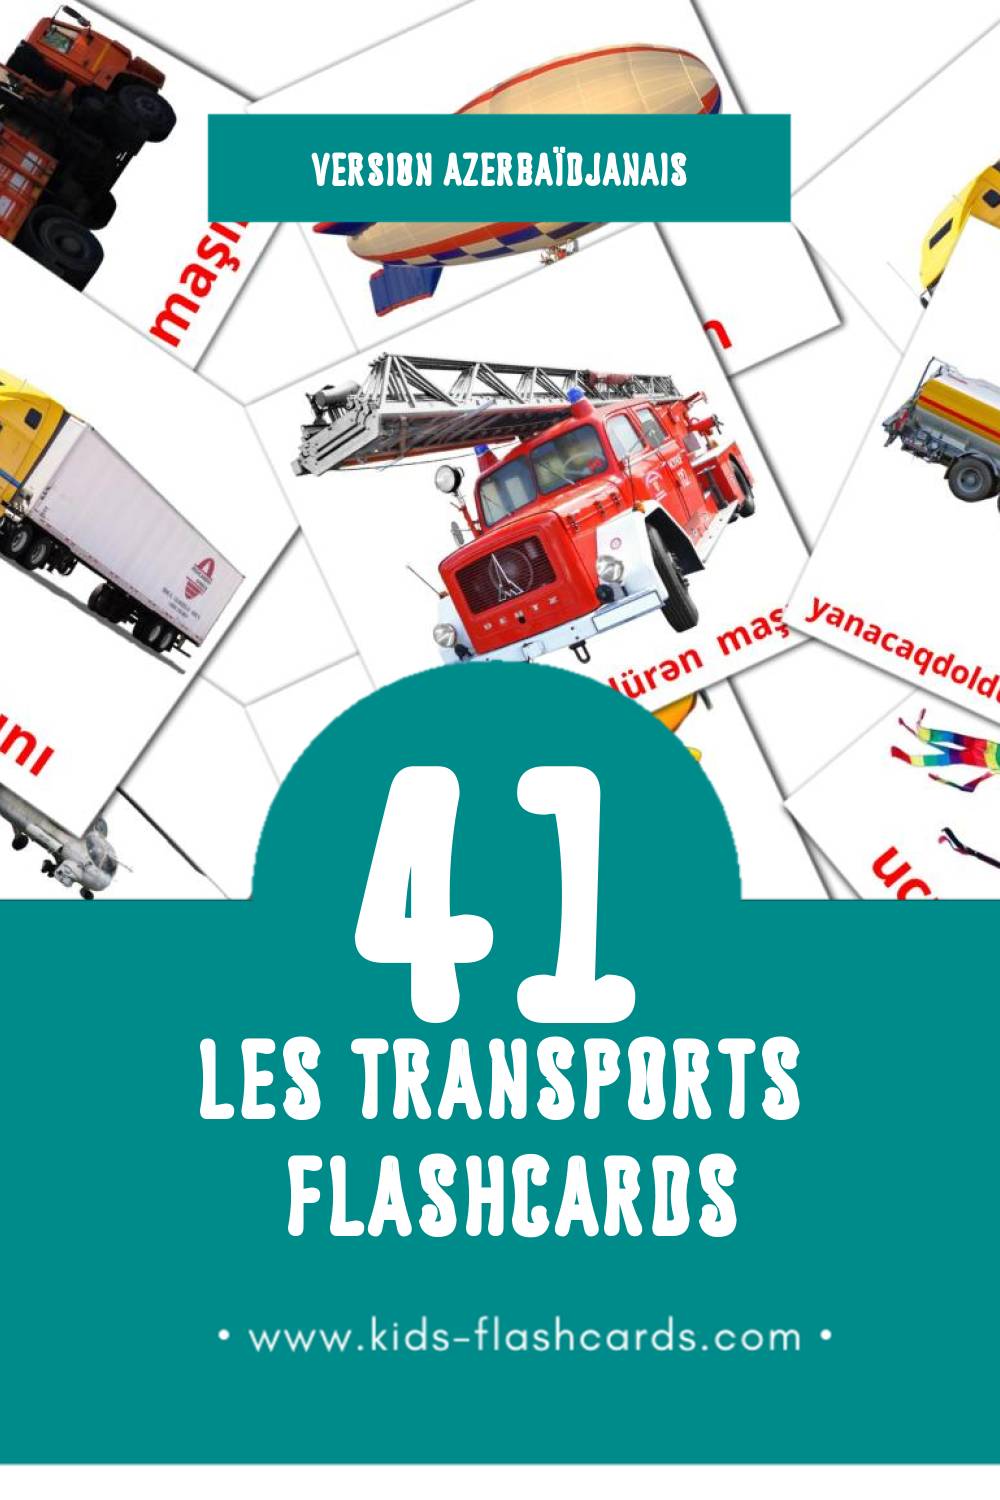 Flashcards Visual ջրային տրանսպորտ pour les tout-petits (42 cartes en Azerbaïdjanais)